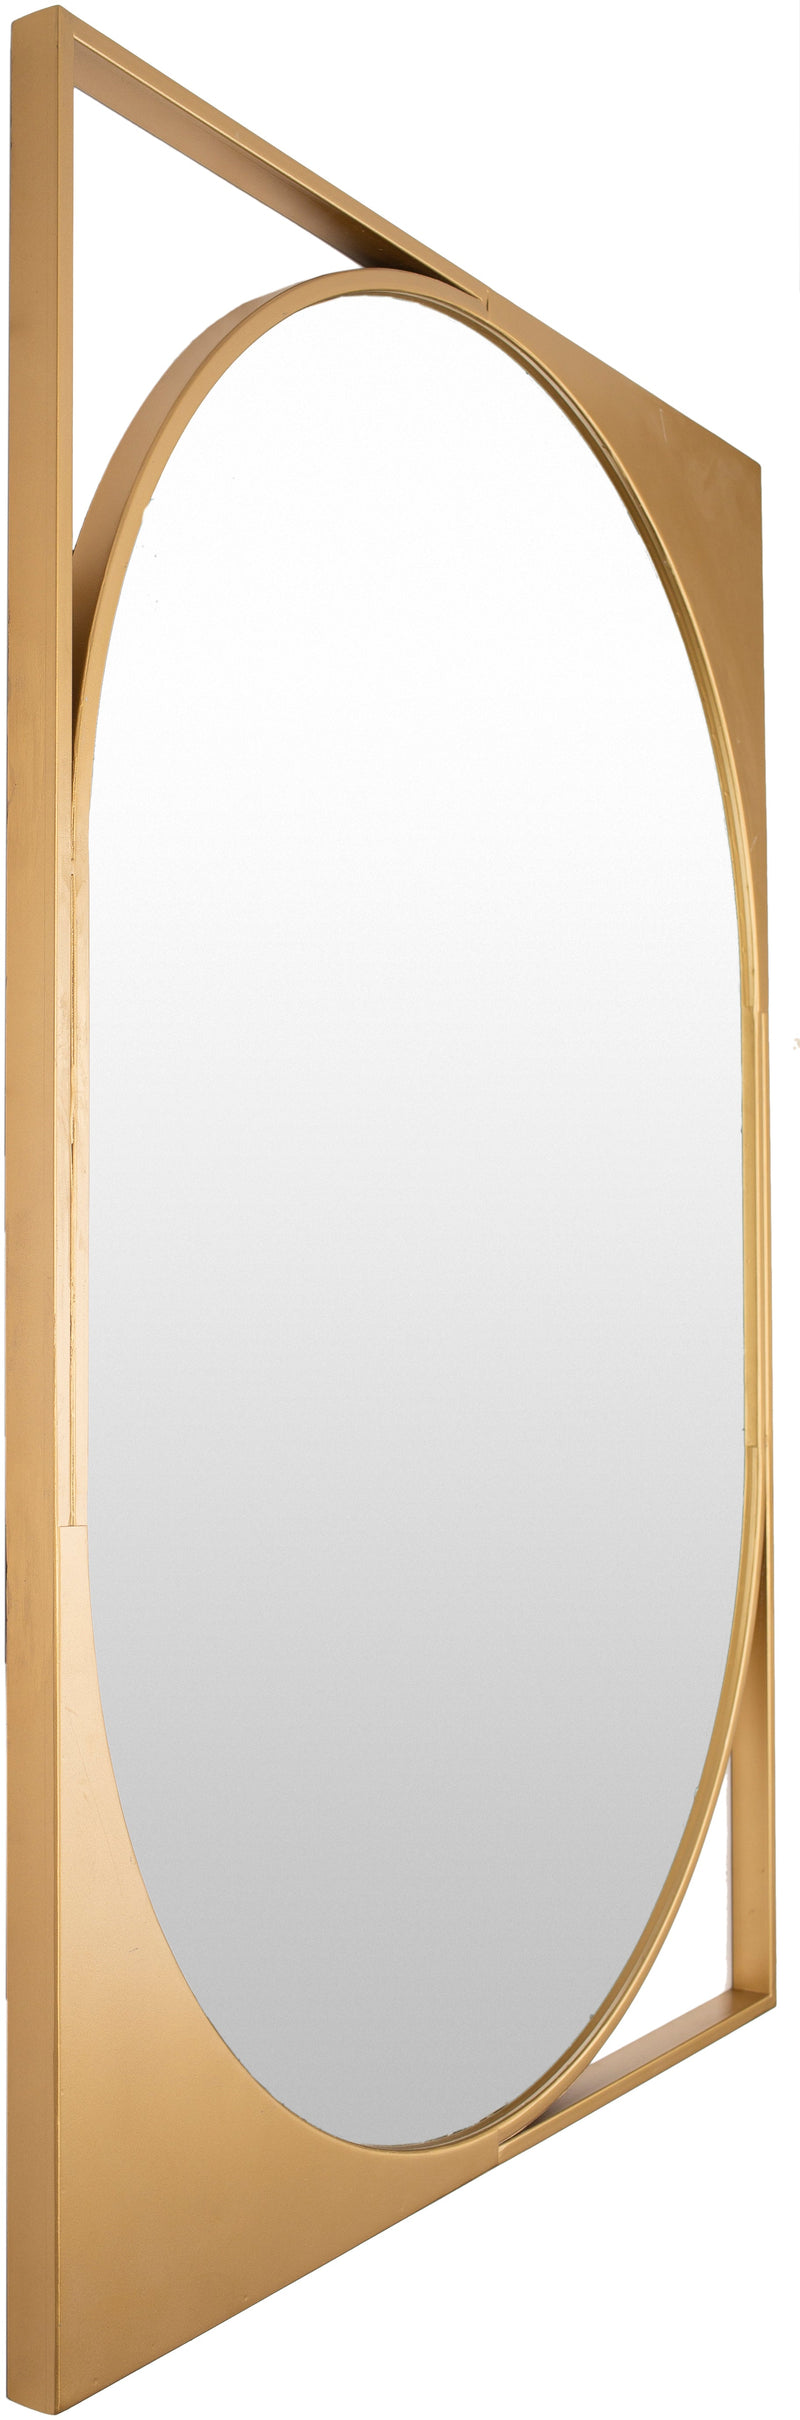 Bauhaus Metal Gold Mirror 3'0"H x 2'2"W